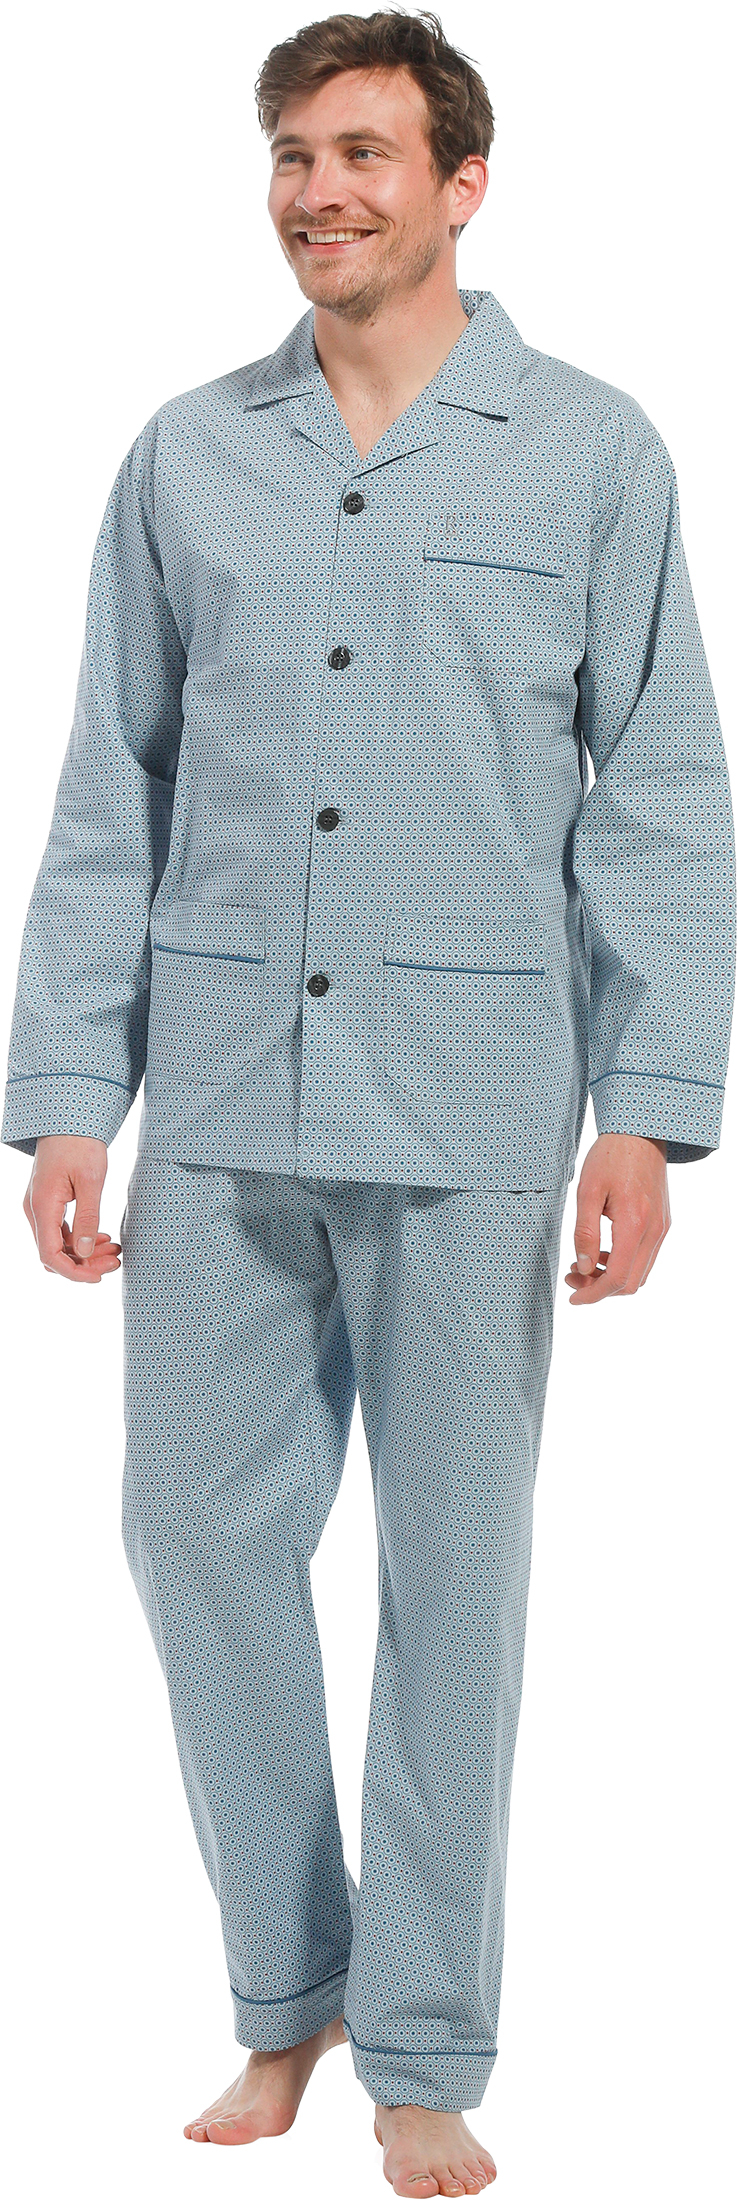 Robson heren pyjama doorknoop 27221-700-6 - Blauw - XL/54